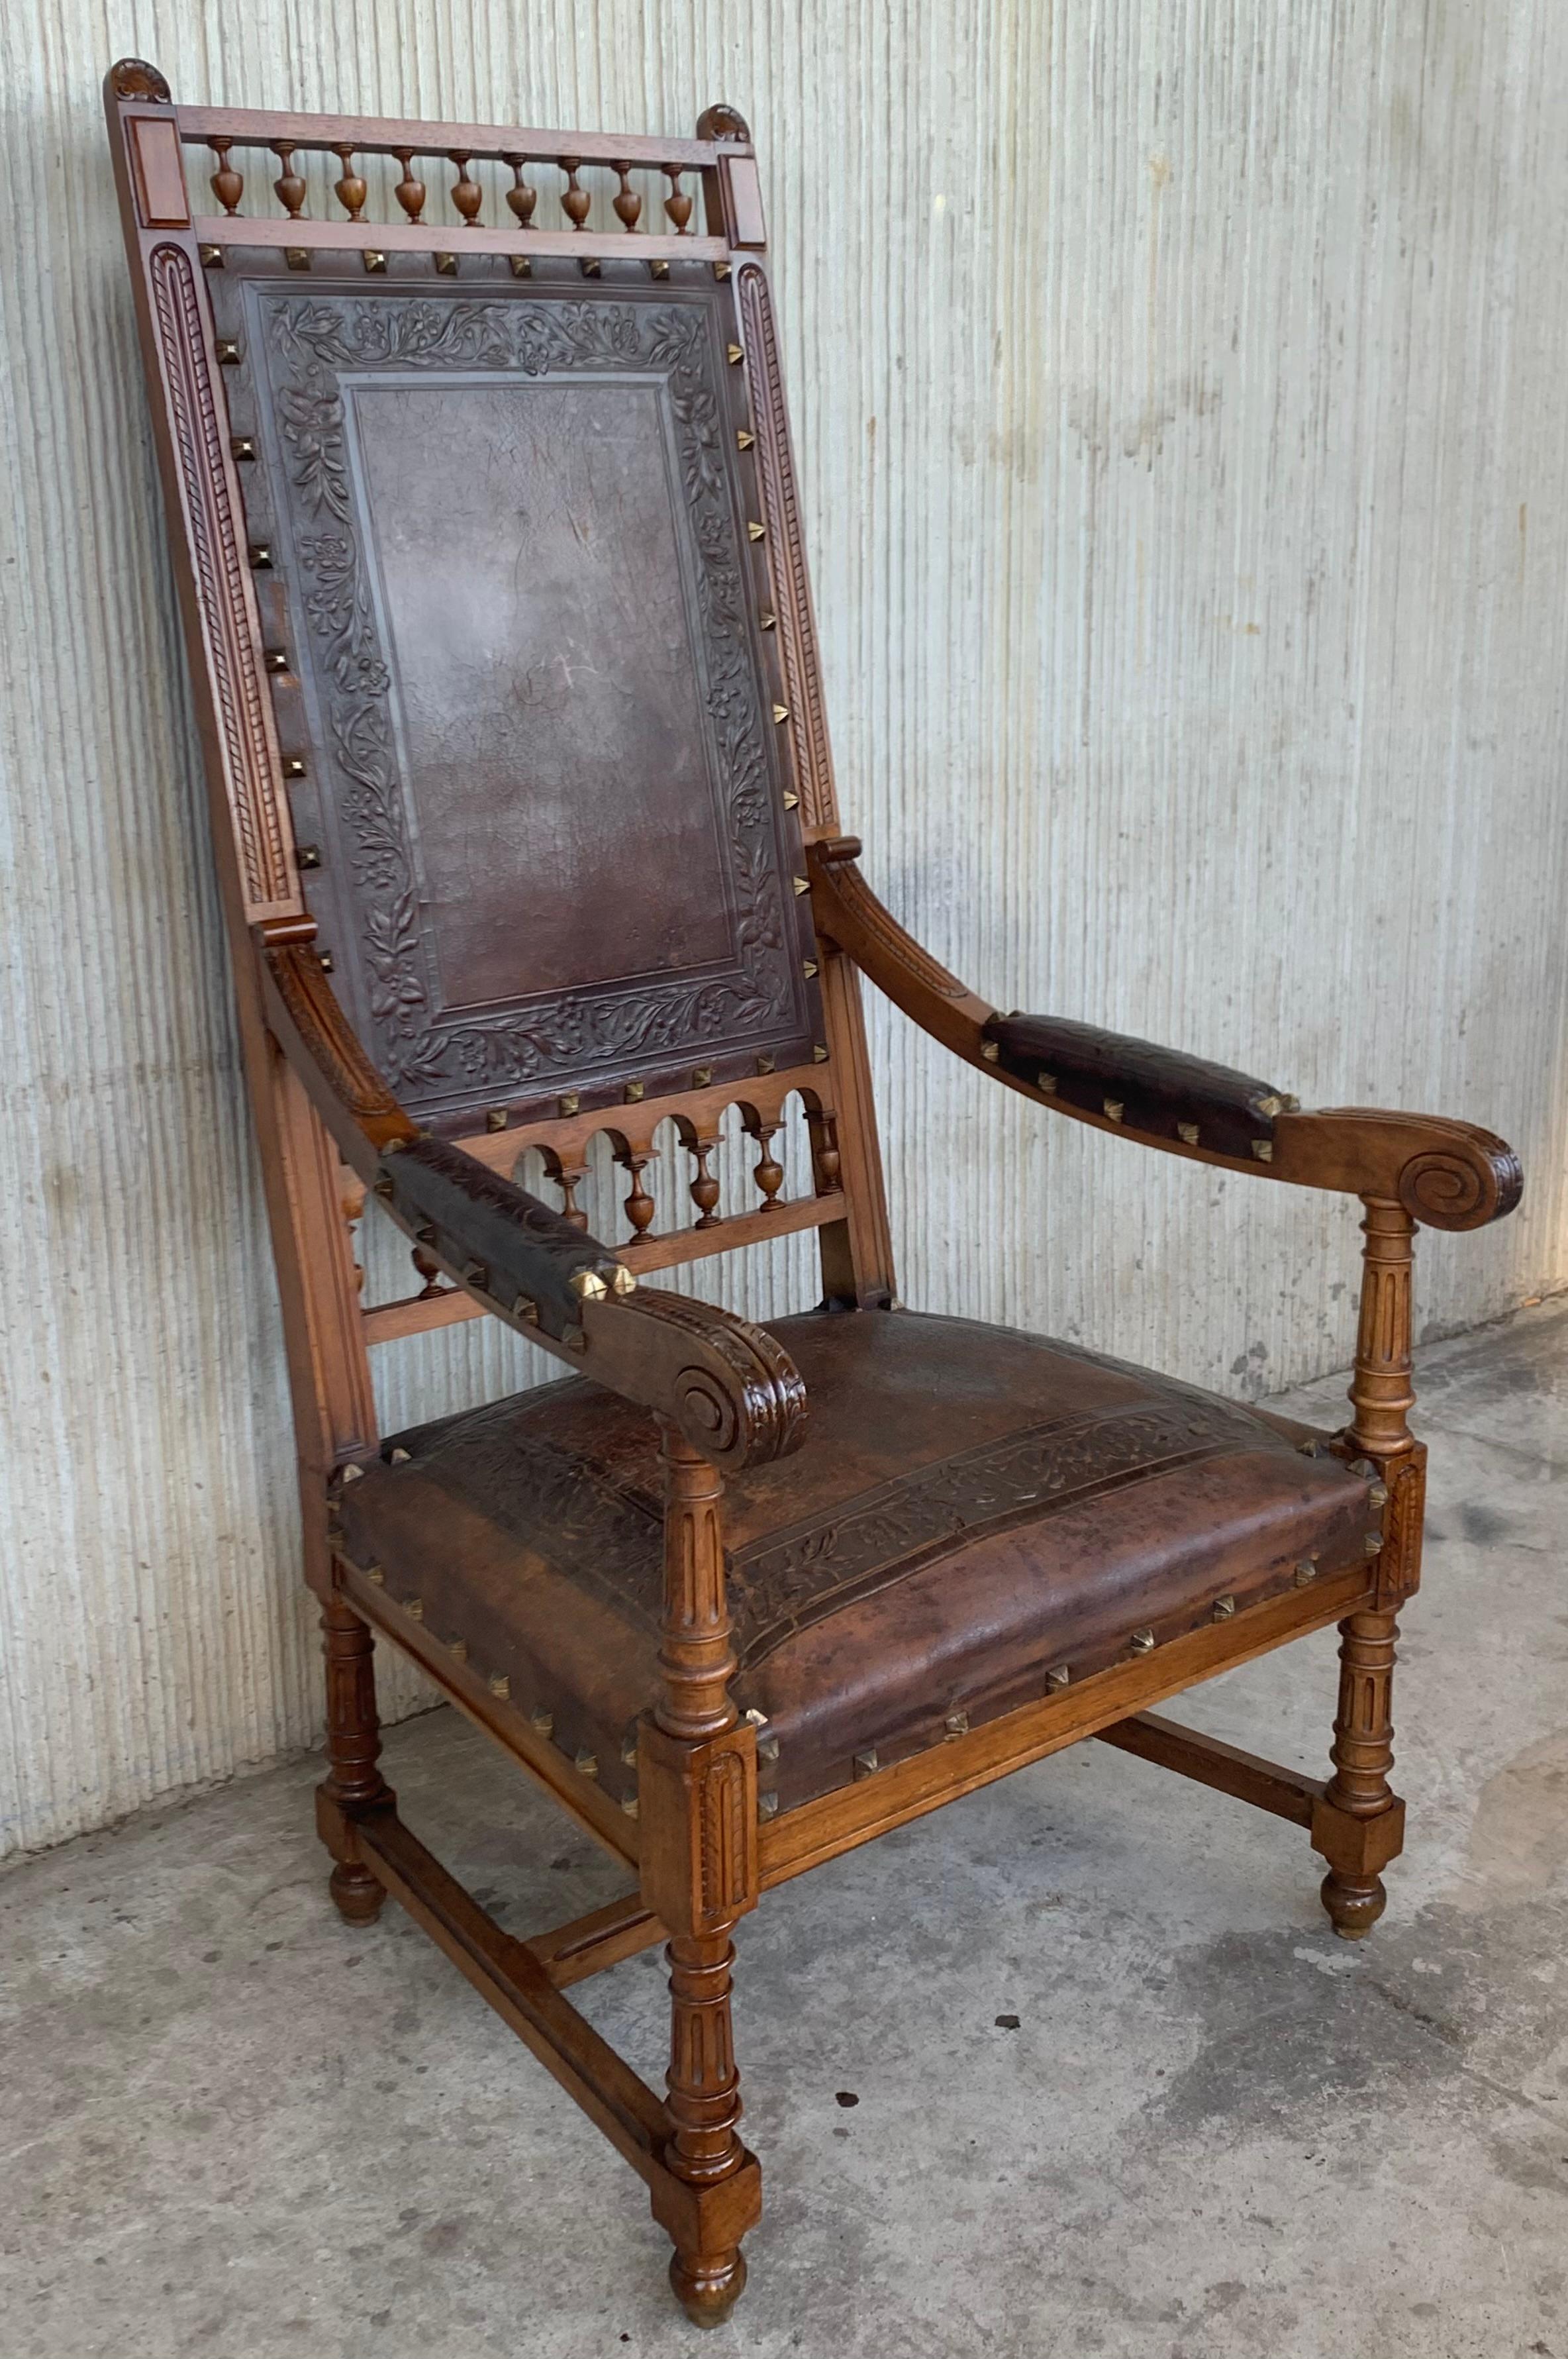 Paire de fauteuils sculptés de style Louis XVI, Italie, années 1900
Bon état antique avec quelques marques mineures d'usage et d'âge.
Un ensemble de deux chaises d'appoint baroques anciennes en bois de noyer en bon état. Cet ensemble de chaises de